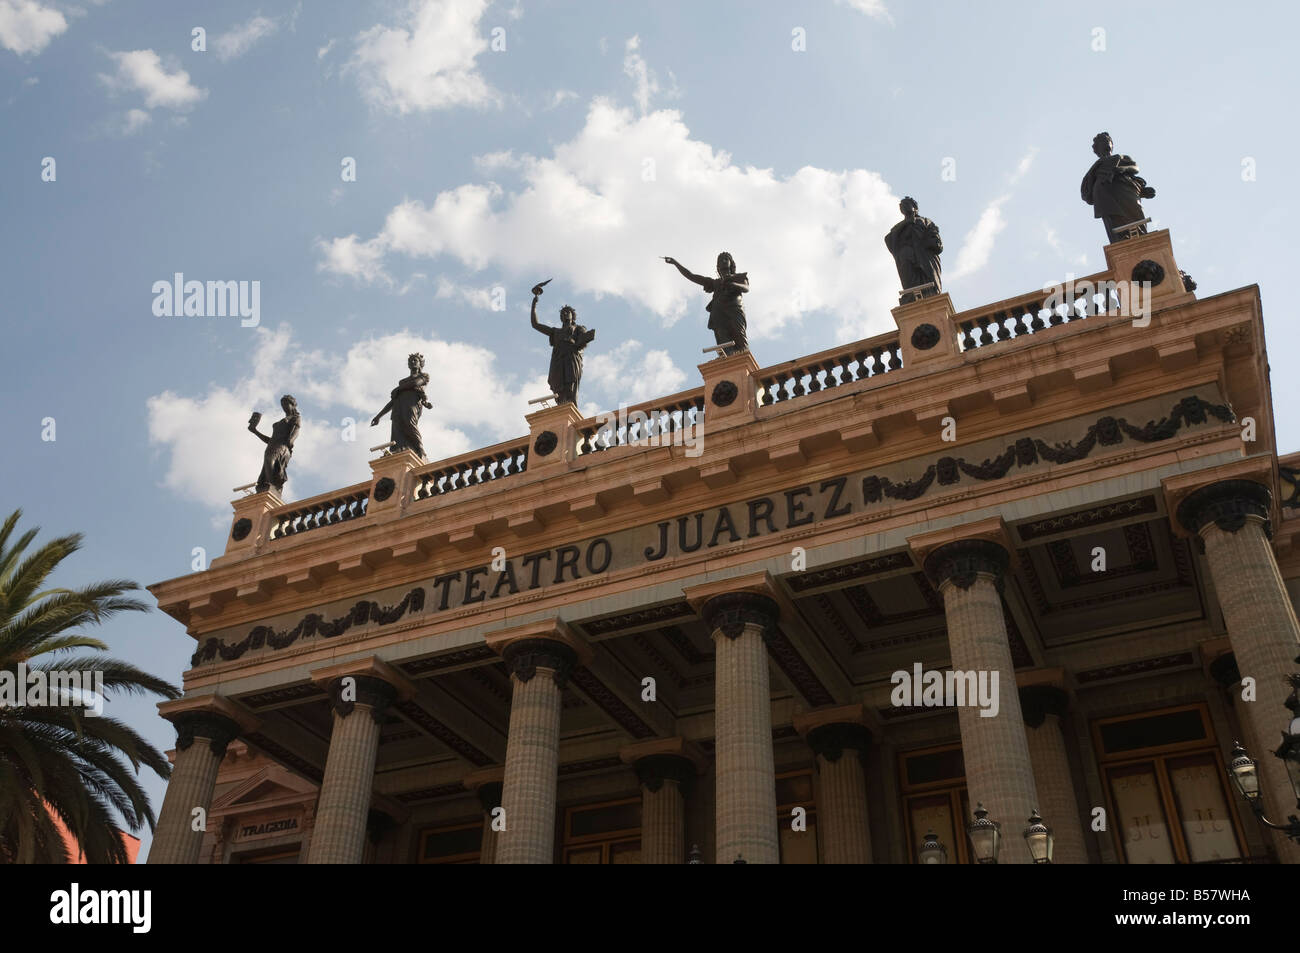 Teatro Juarez, le théâtre célèbre pour ses mélanges d'architecture à Guanajuato, Site du patrimoine mondial de l'UNESCO, de l'État de Guanajuato Banque D'Images